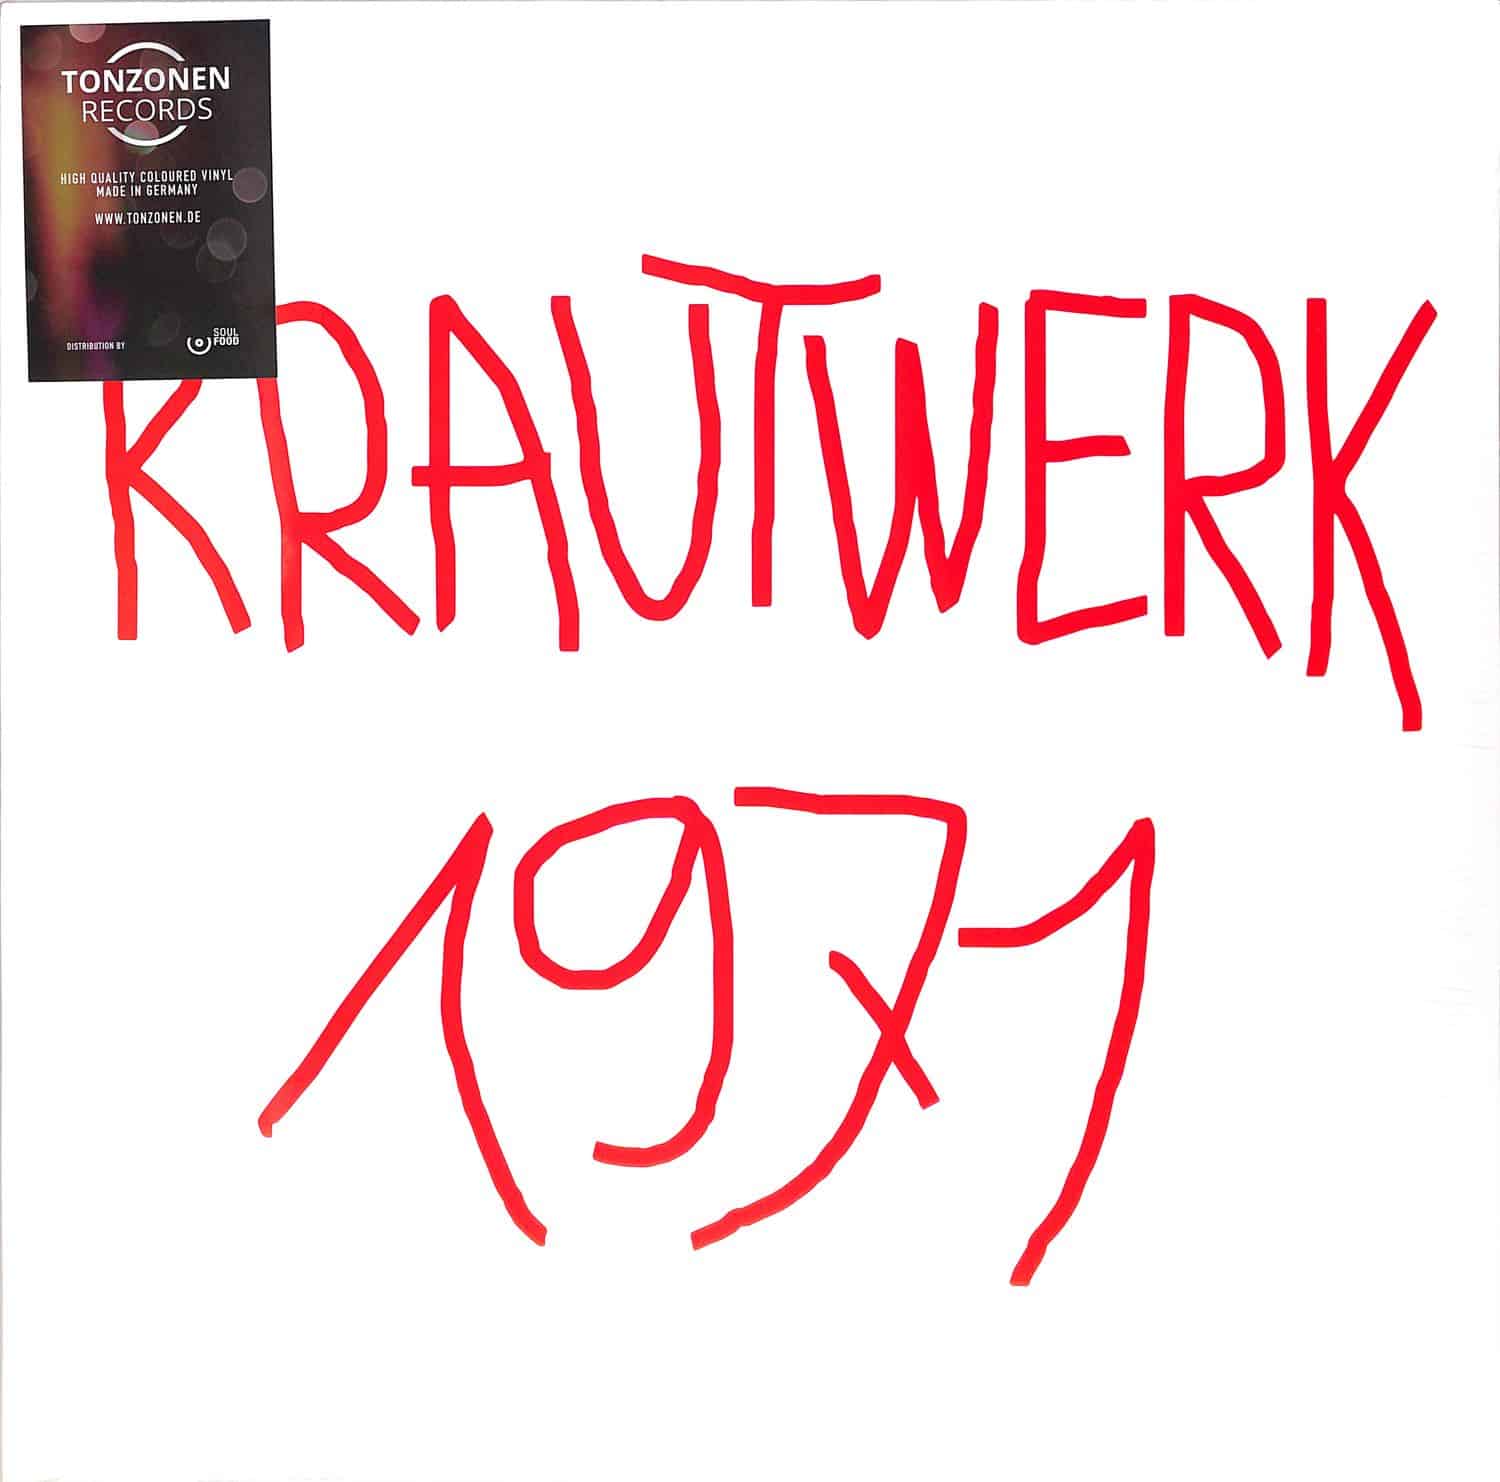 Krautwerk - 1971 